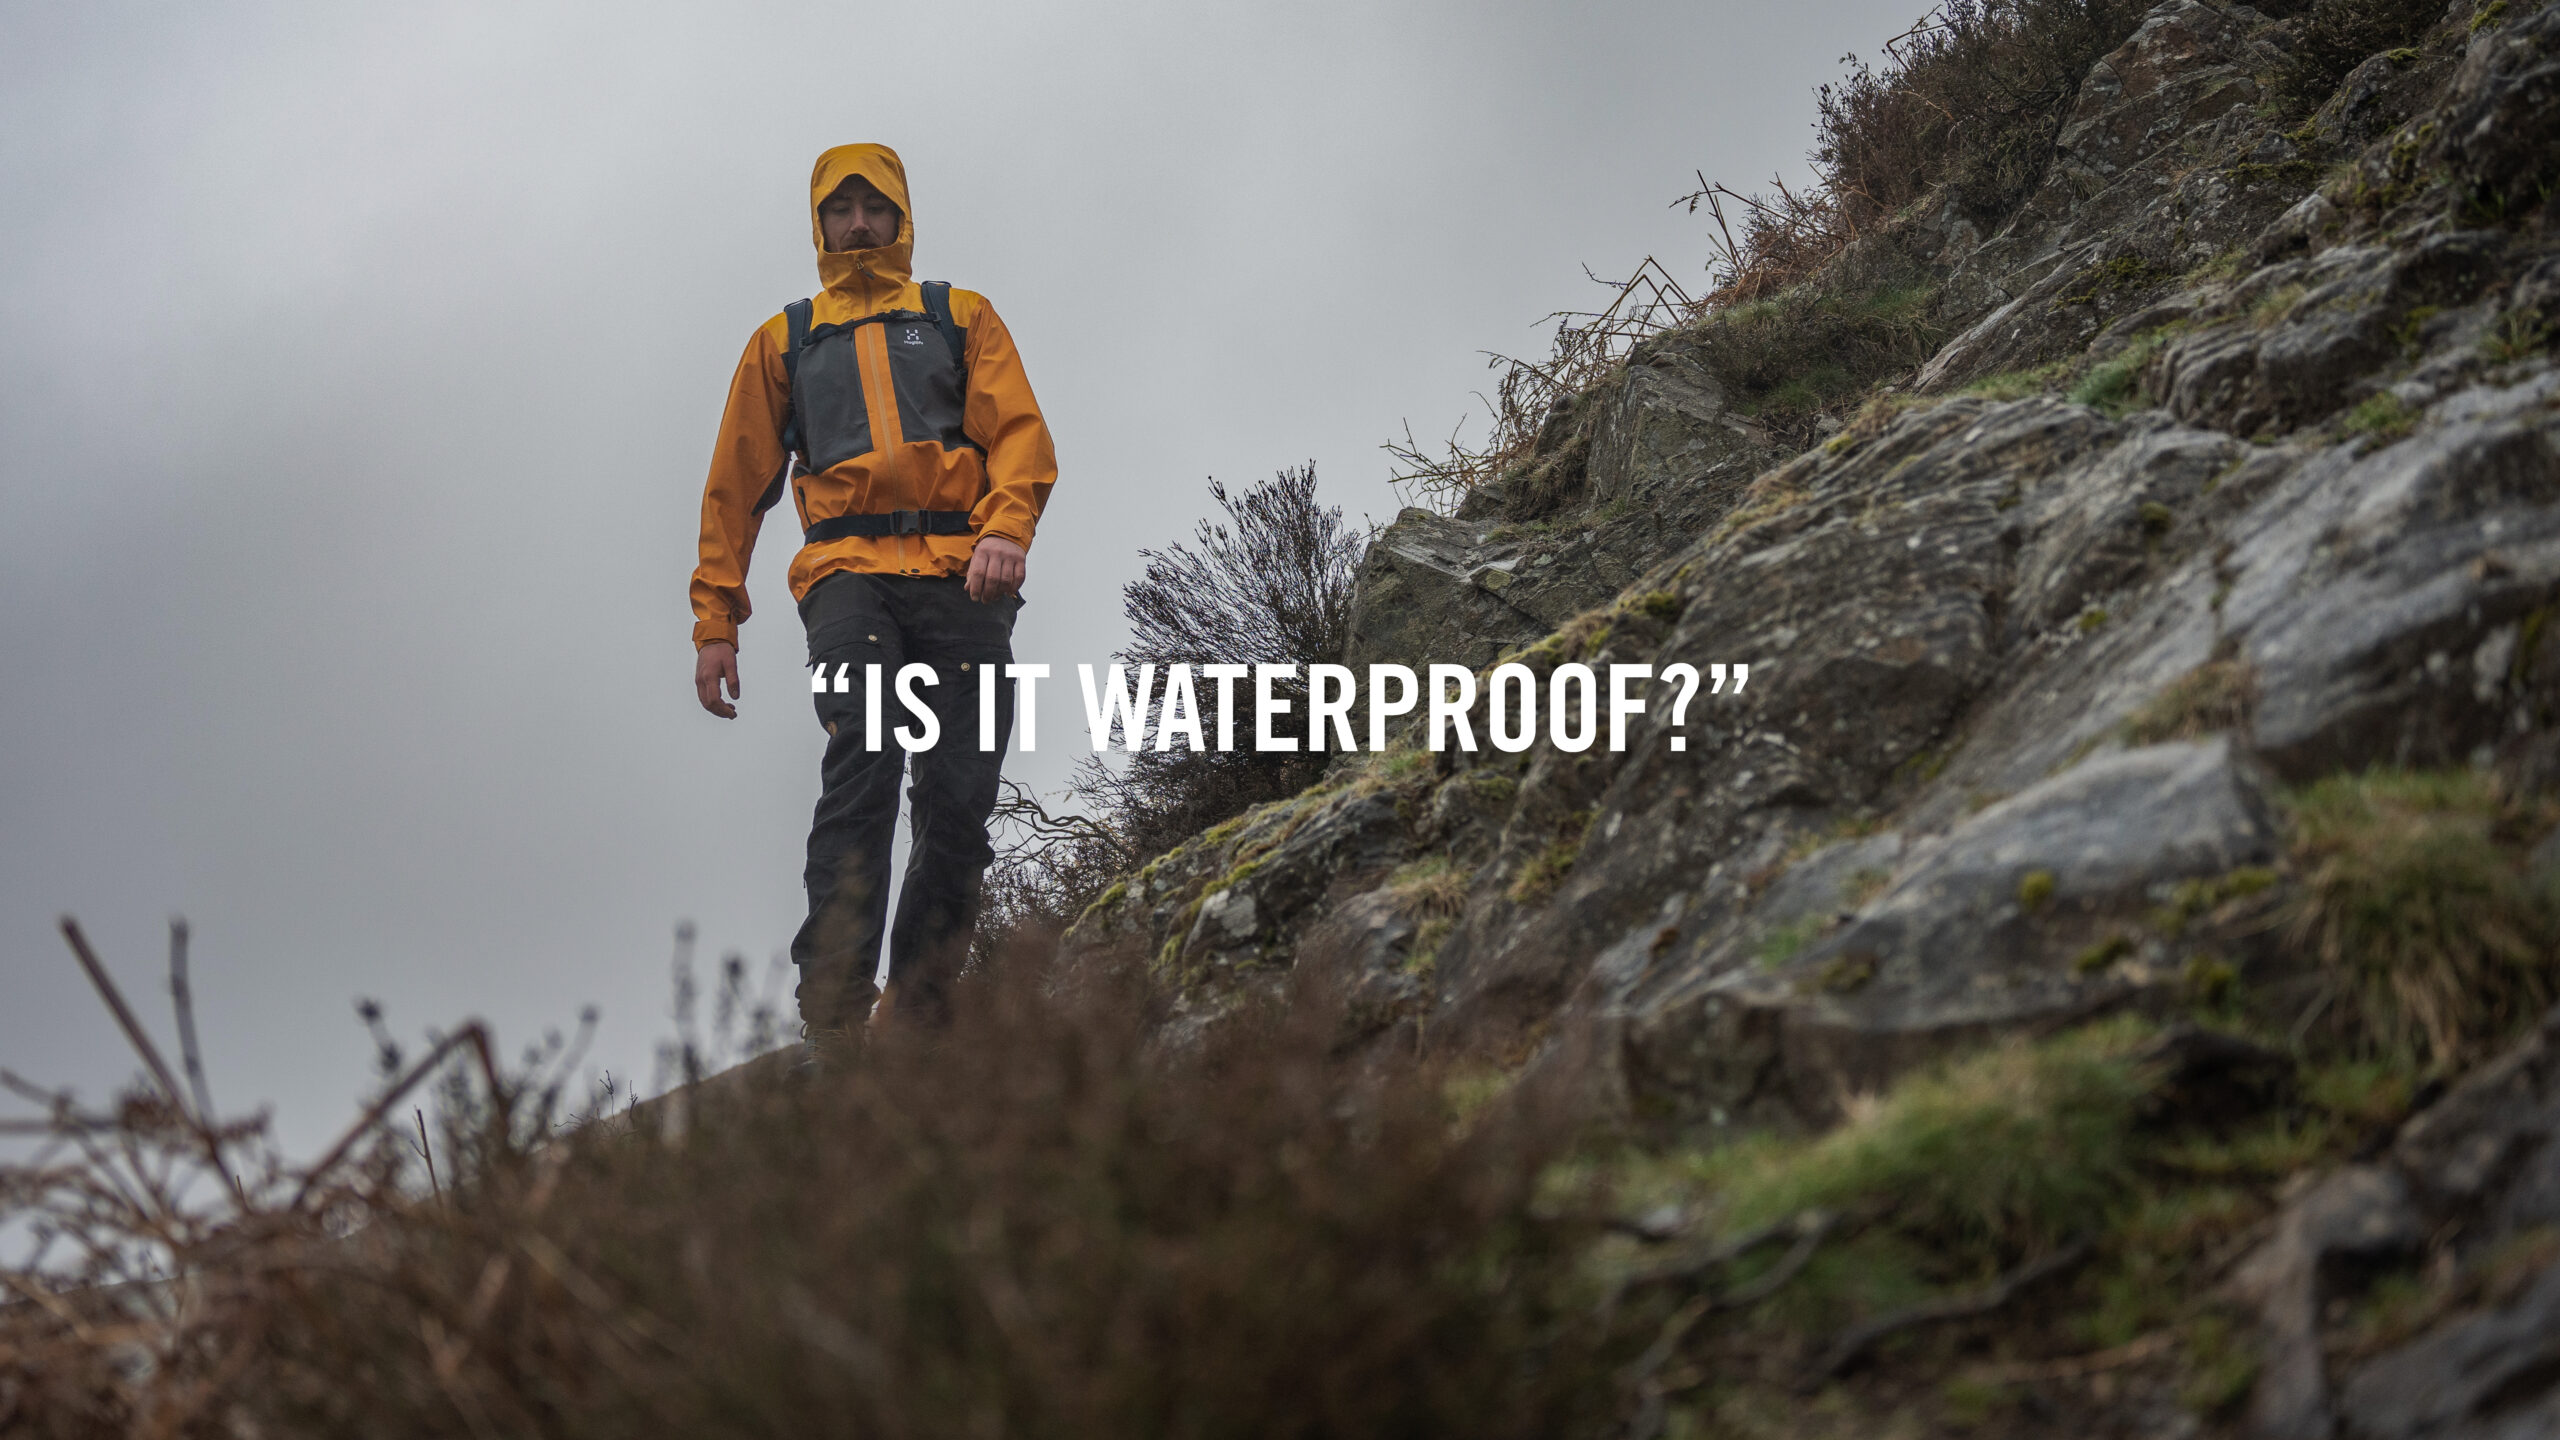 “Is my outdoor gear waterproof?”